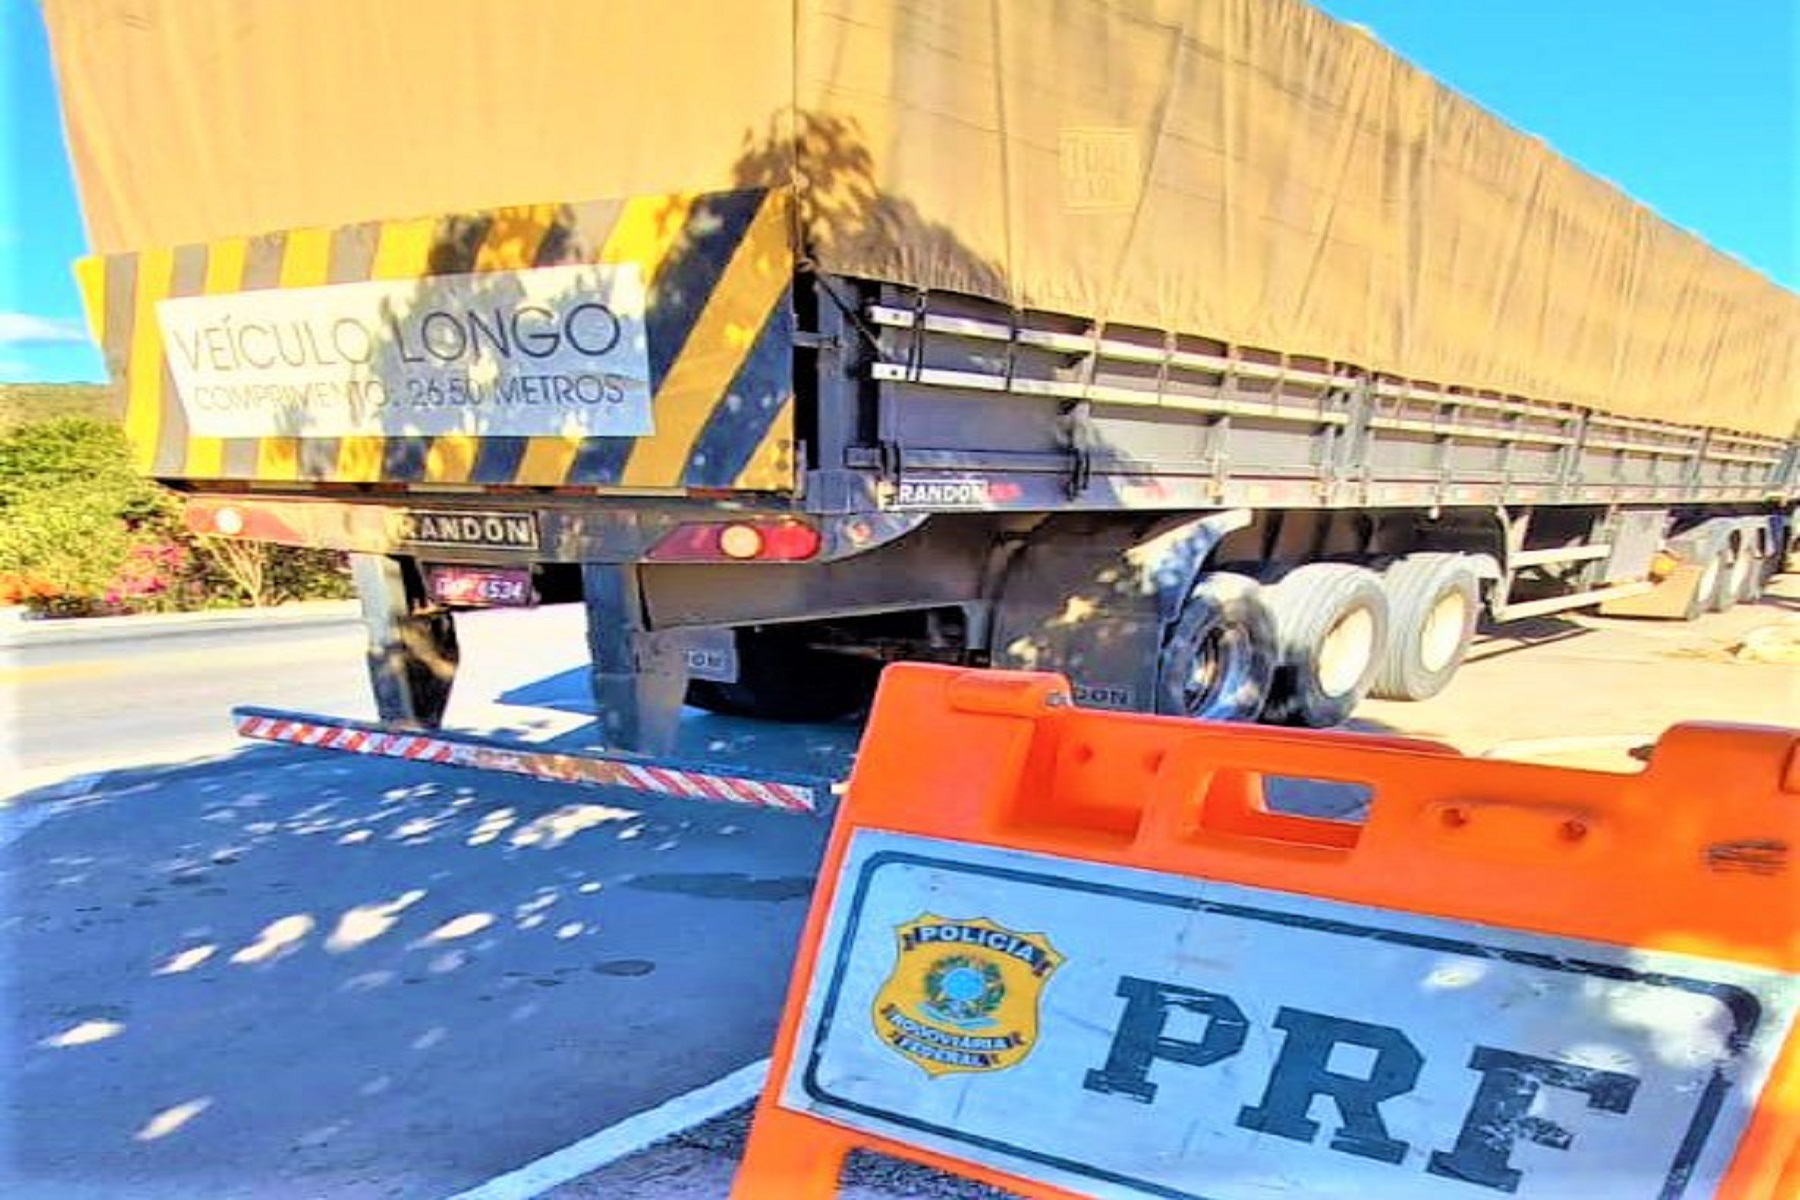 Em um intervalo de 7 horas, a PRF flagra dois caminhões transportando mercadorias com nota fiscal irregular